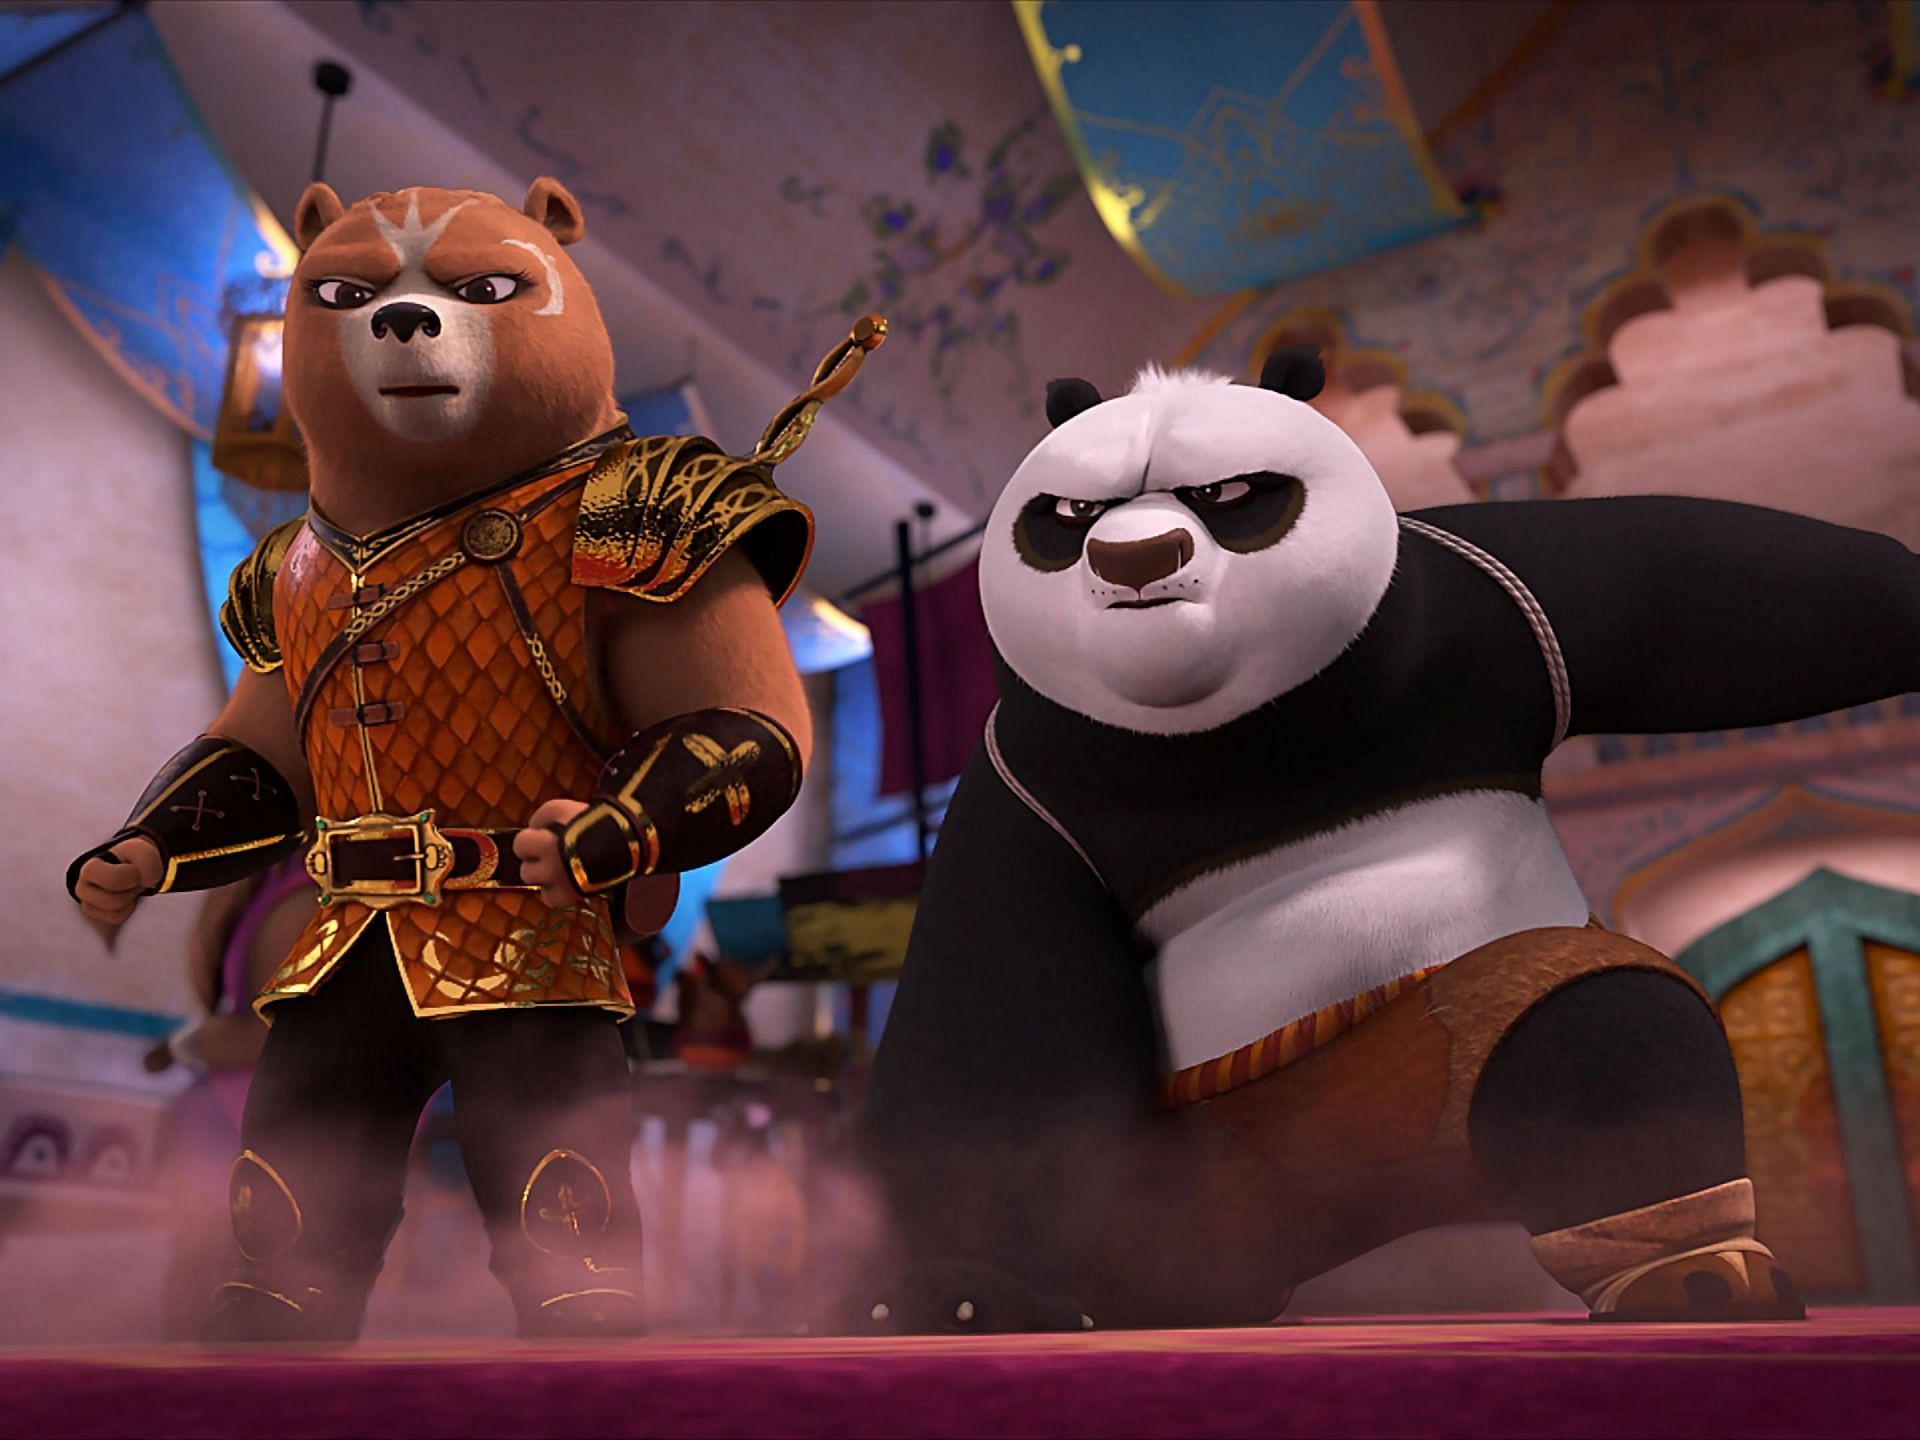 Kung Fu Panda: The Dragon Knight (TV Series 2022–2023) - IMDb